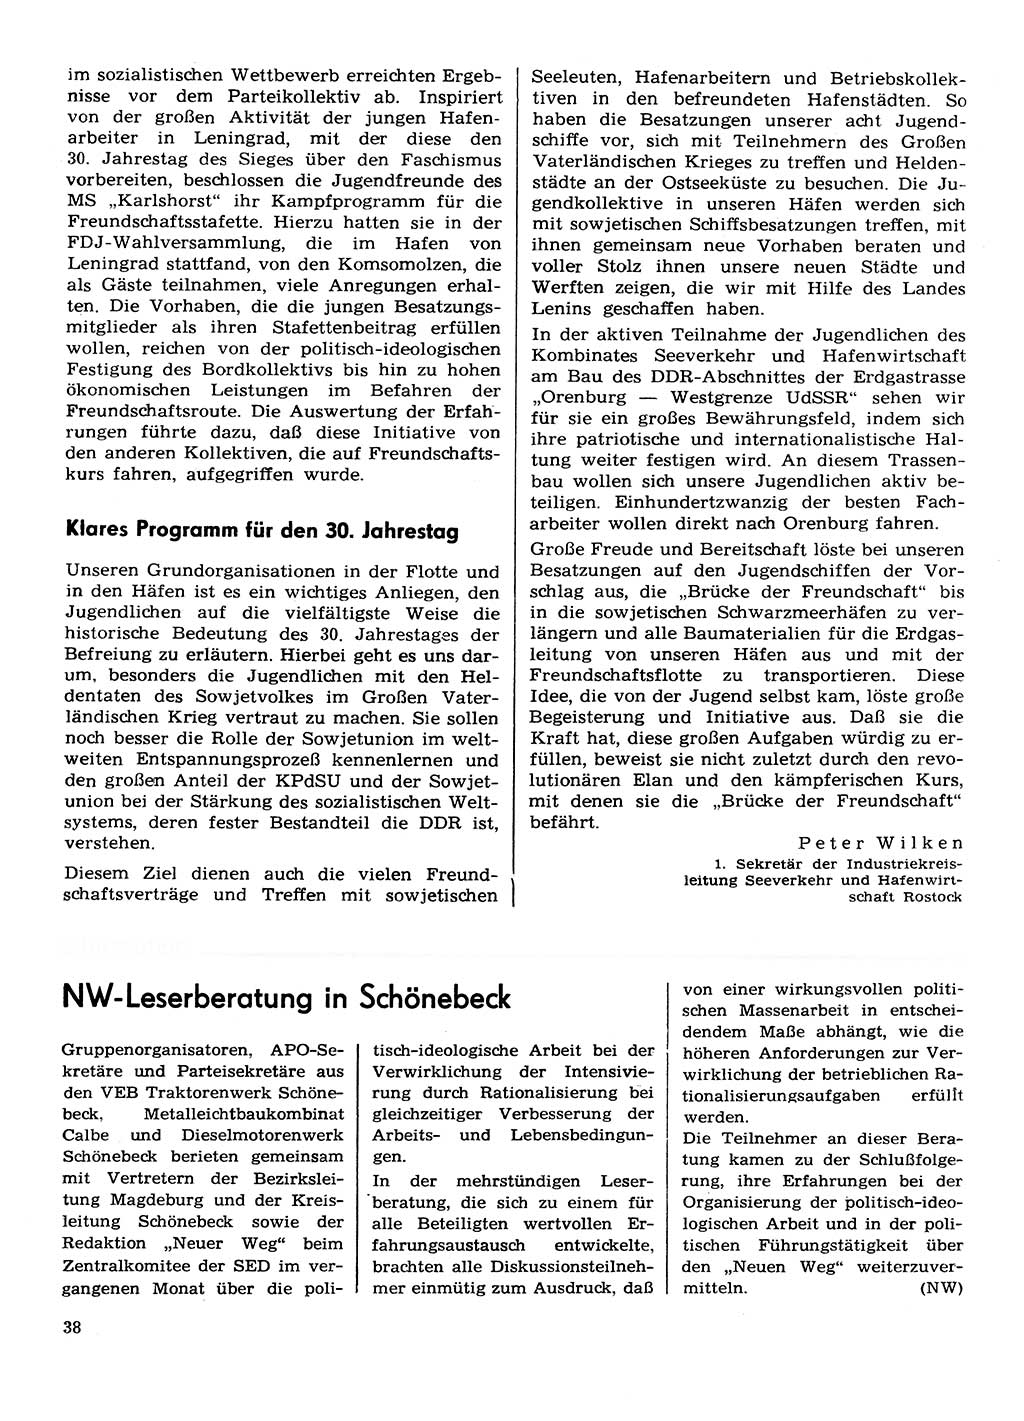 Neuer Weg (NW), Organ des Zentralkomitees (ZK) der SED (Sozialistische Einheitspartei Deutschlands) für Fragen des Parteilebens, 30. Jahrgang [Deutsche Demokratische Republik (DDR)] 1975, Seite 38 (NW ZK SED DDR 1975, S. 38)